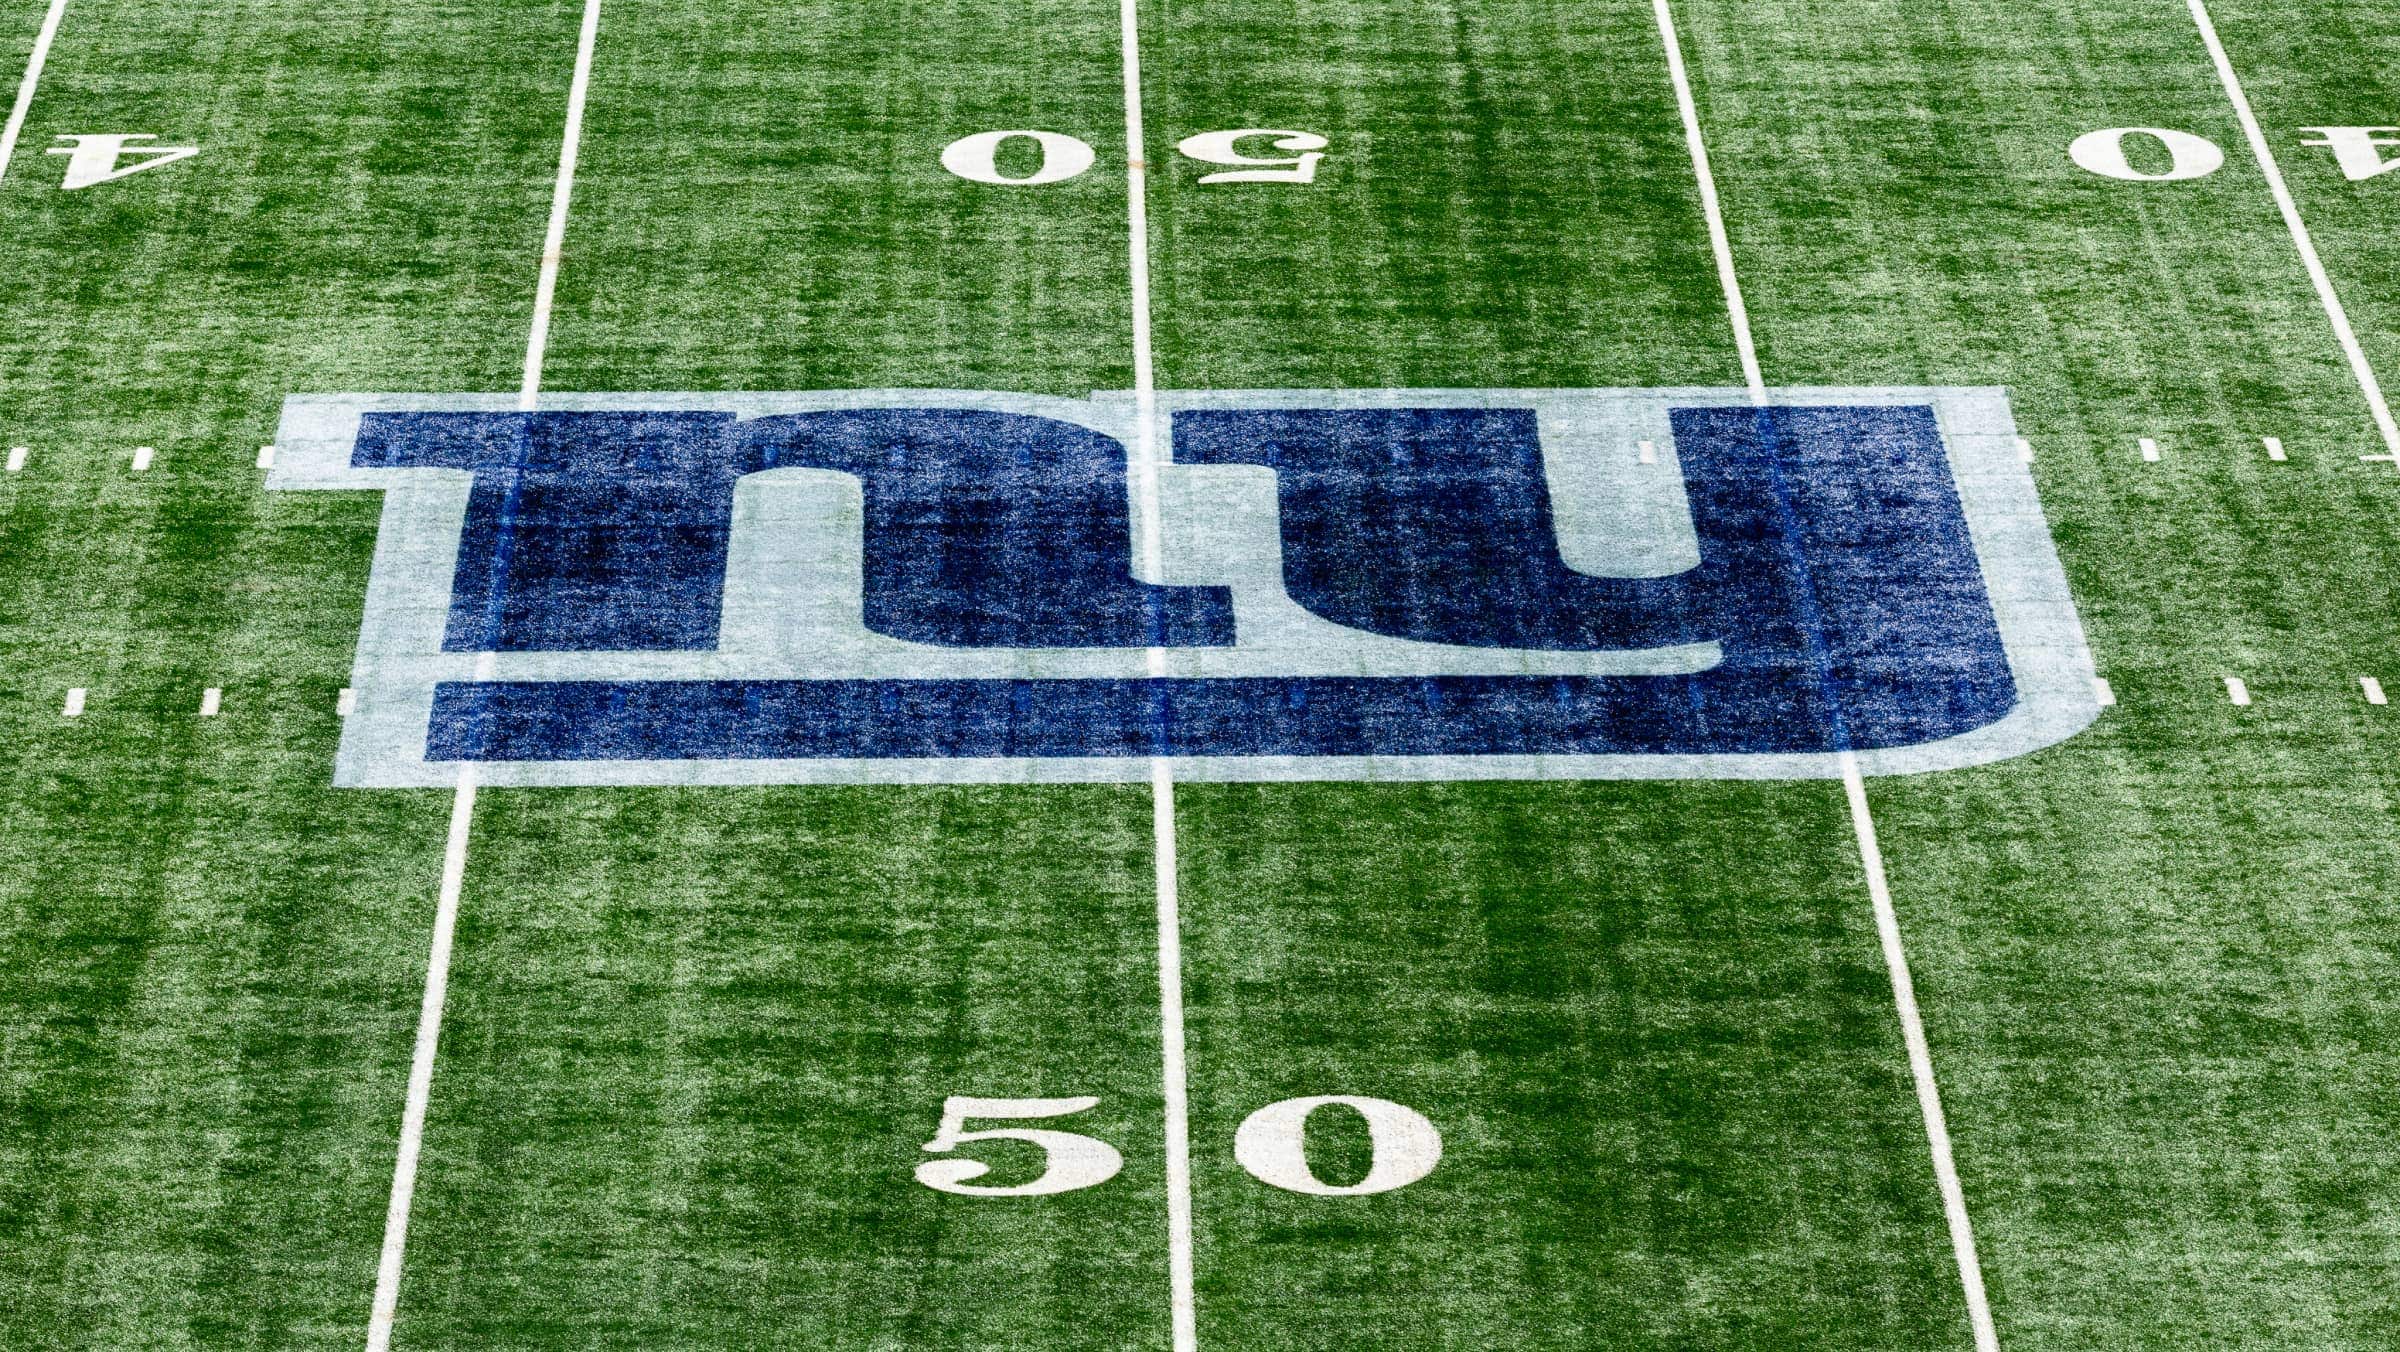 NY Giants logo on football field.